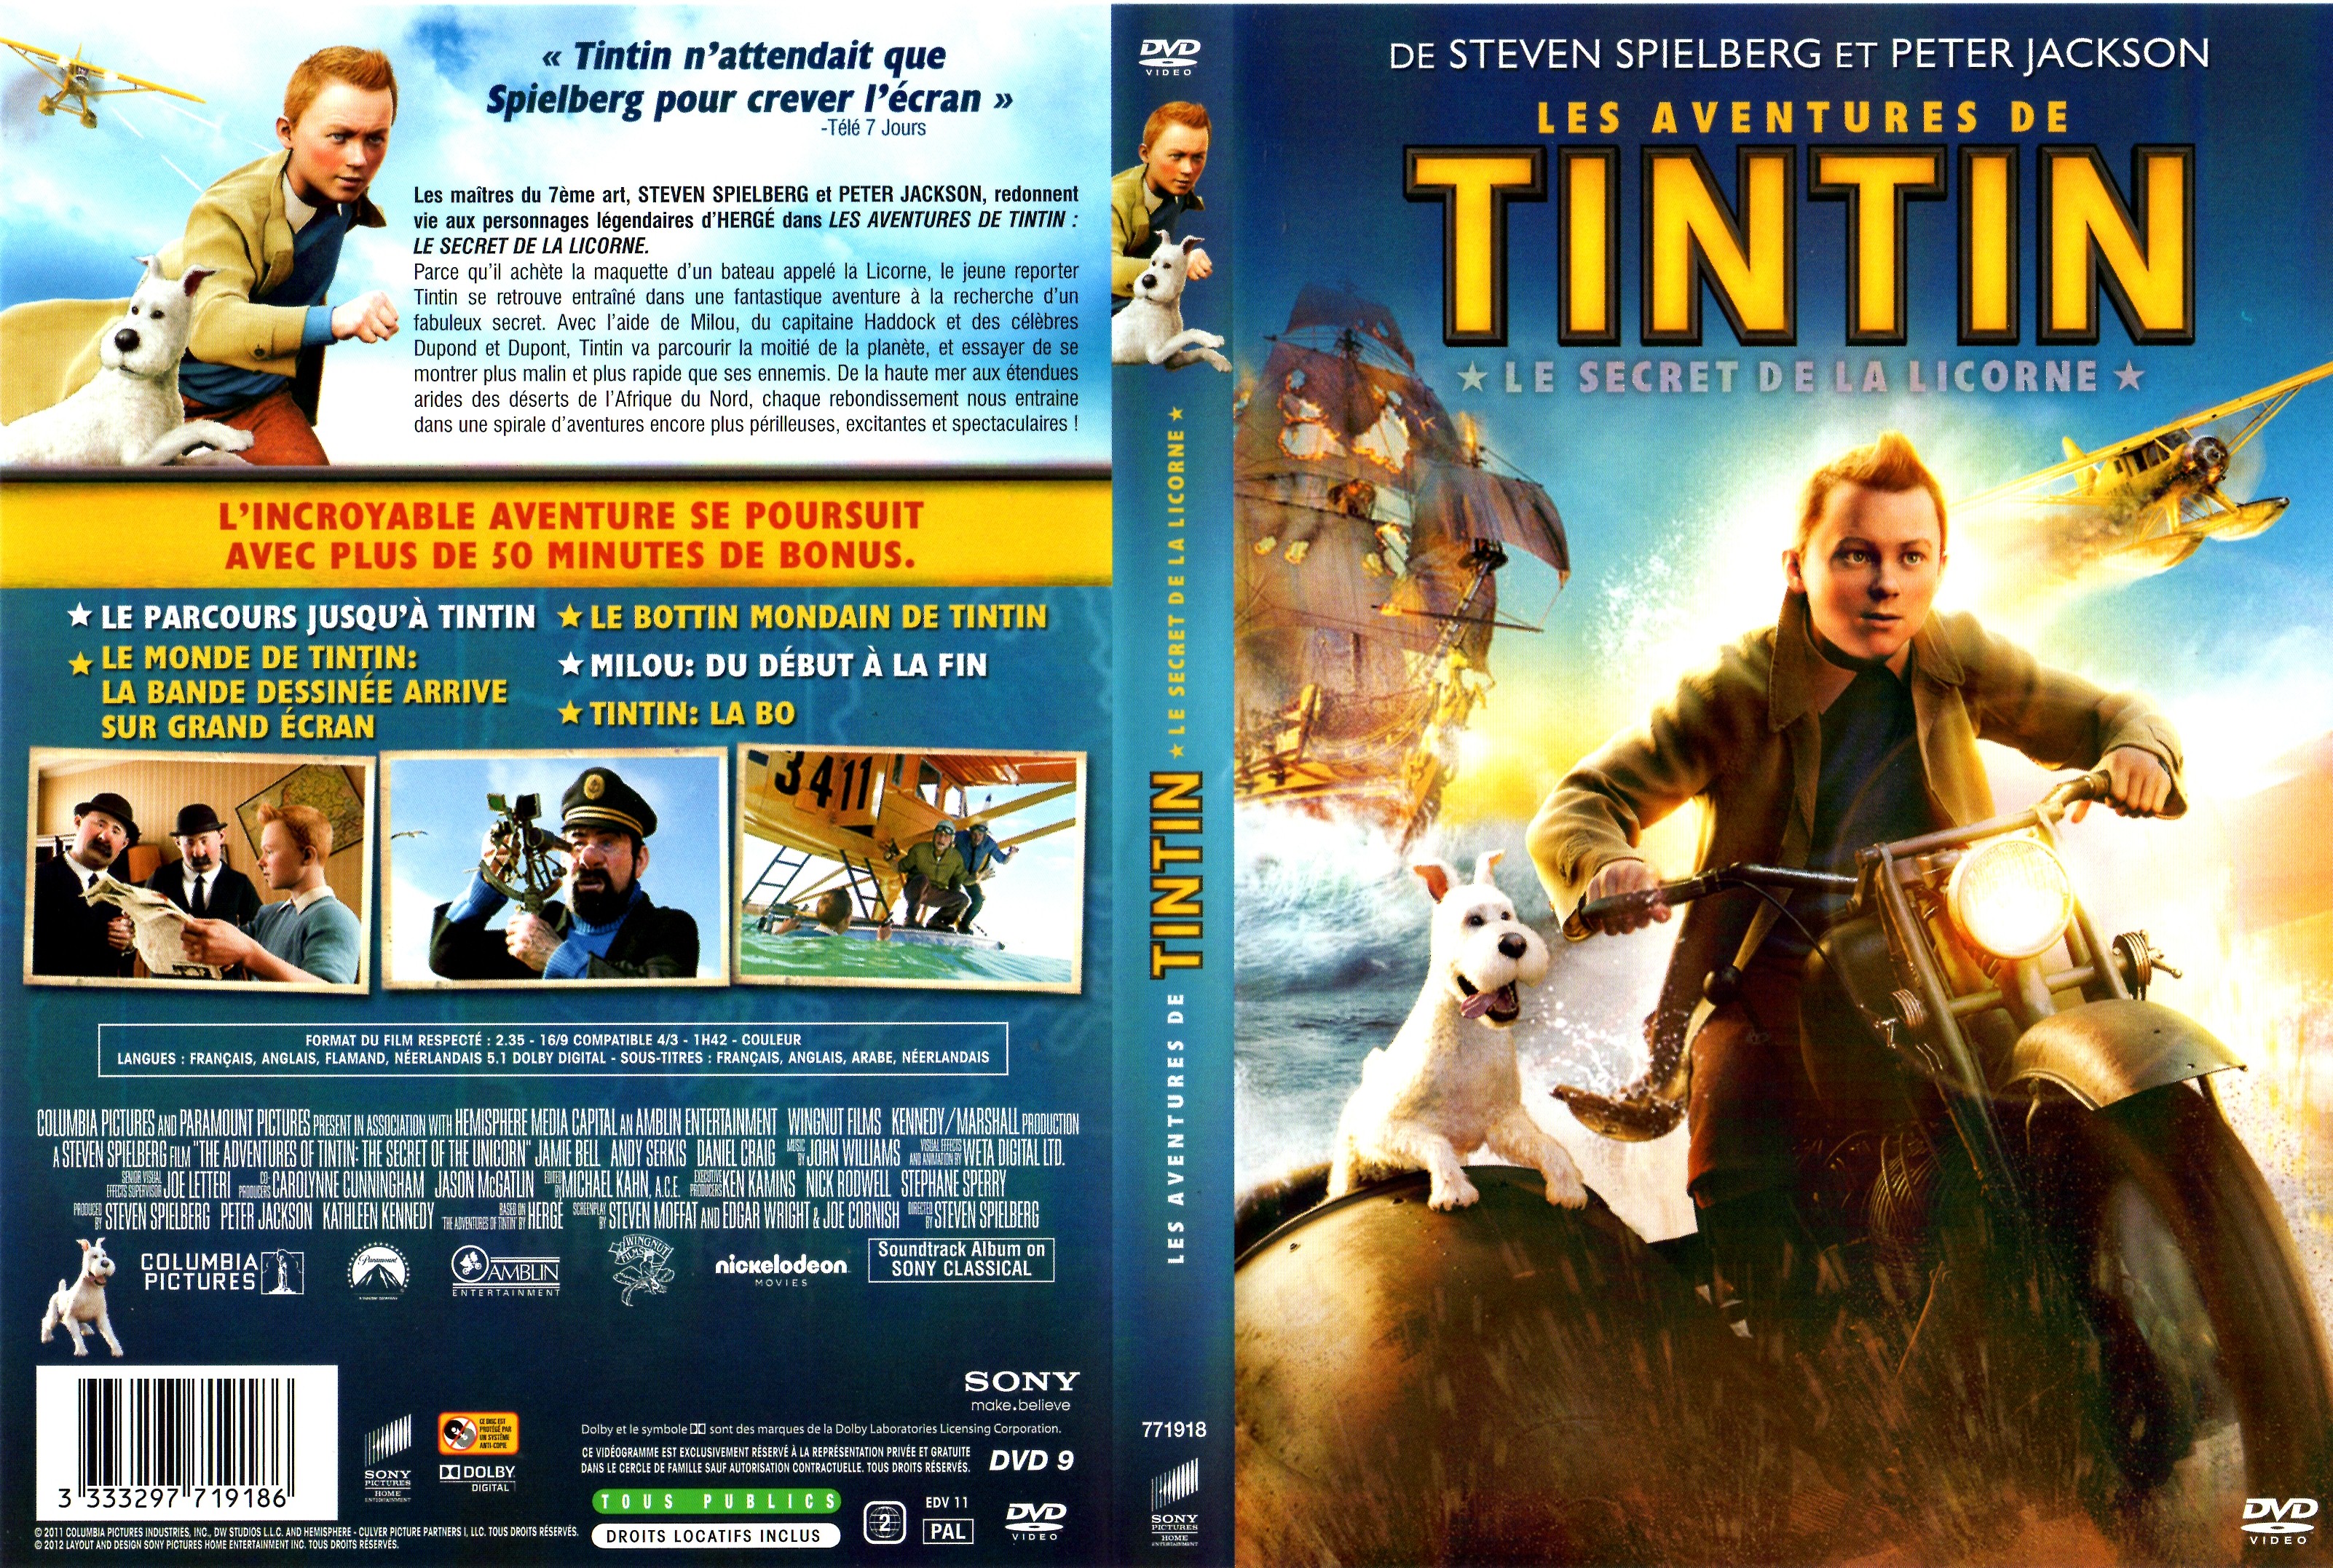 Jaquette DVD Les aventures de Tintin le secret de la Licorne